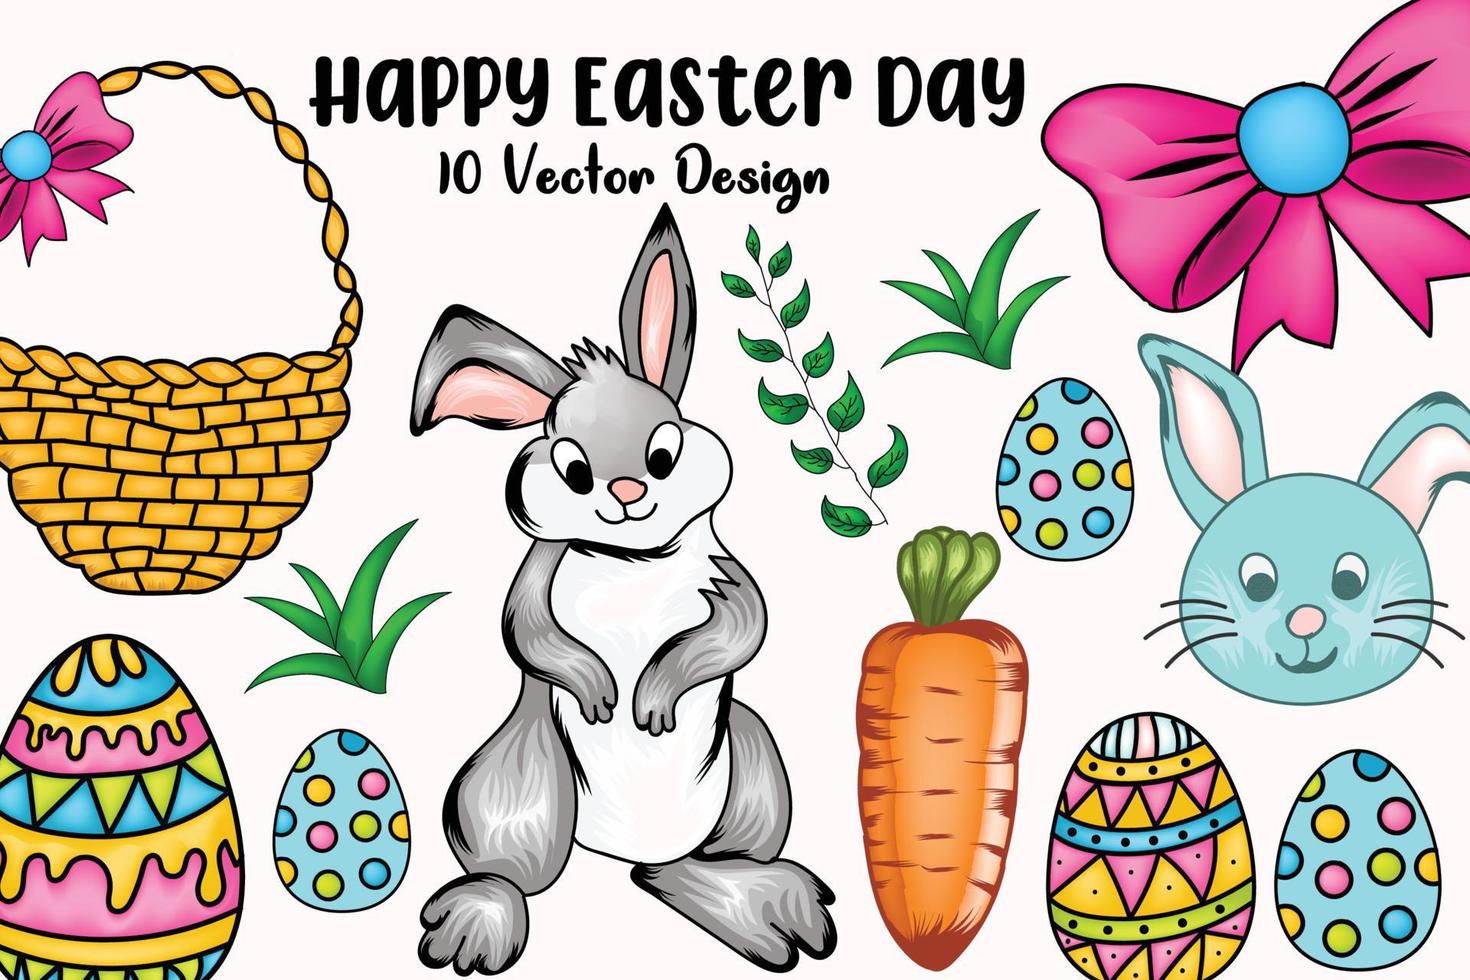 content Pâques journée clipart lapin, carotte, lapin, œufs, et herbe avec vecteurs dessins vecteur